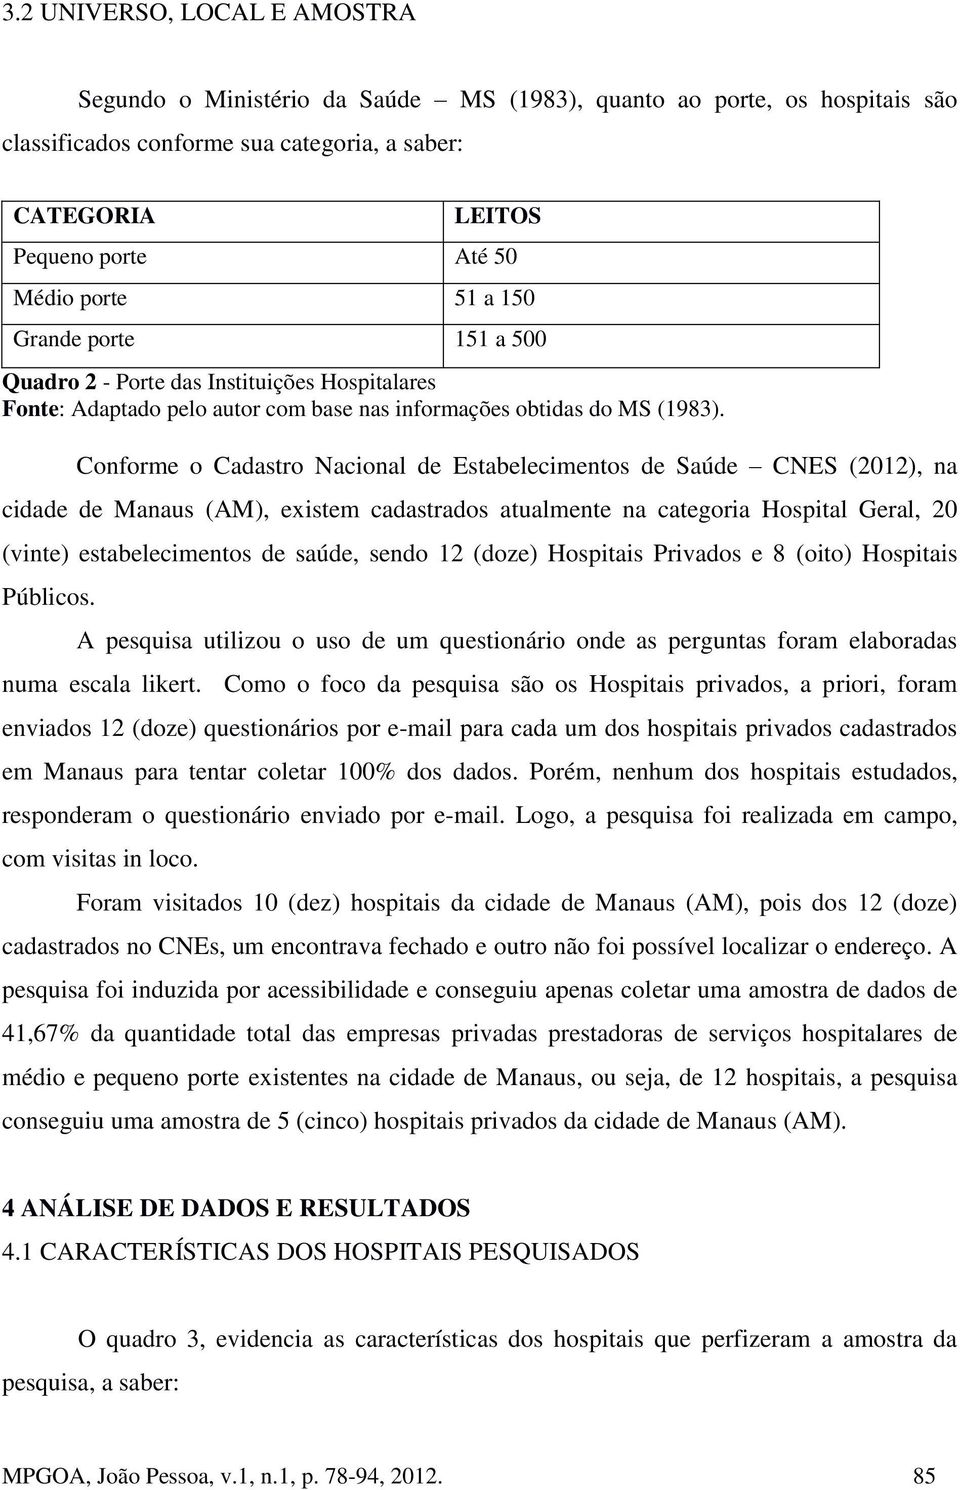 Conforme o Cadastro Nacional de Estabelecimentos de Saúde CNES (2012), na cidade de Manaus (AM), existem cadastrados atualmente na categoria Hospital Geral, 20 (vinte) estabelecimentos de saúde,